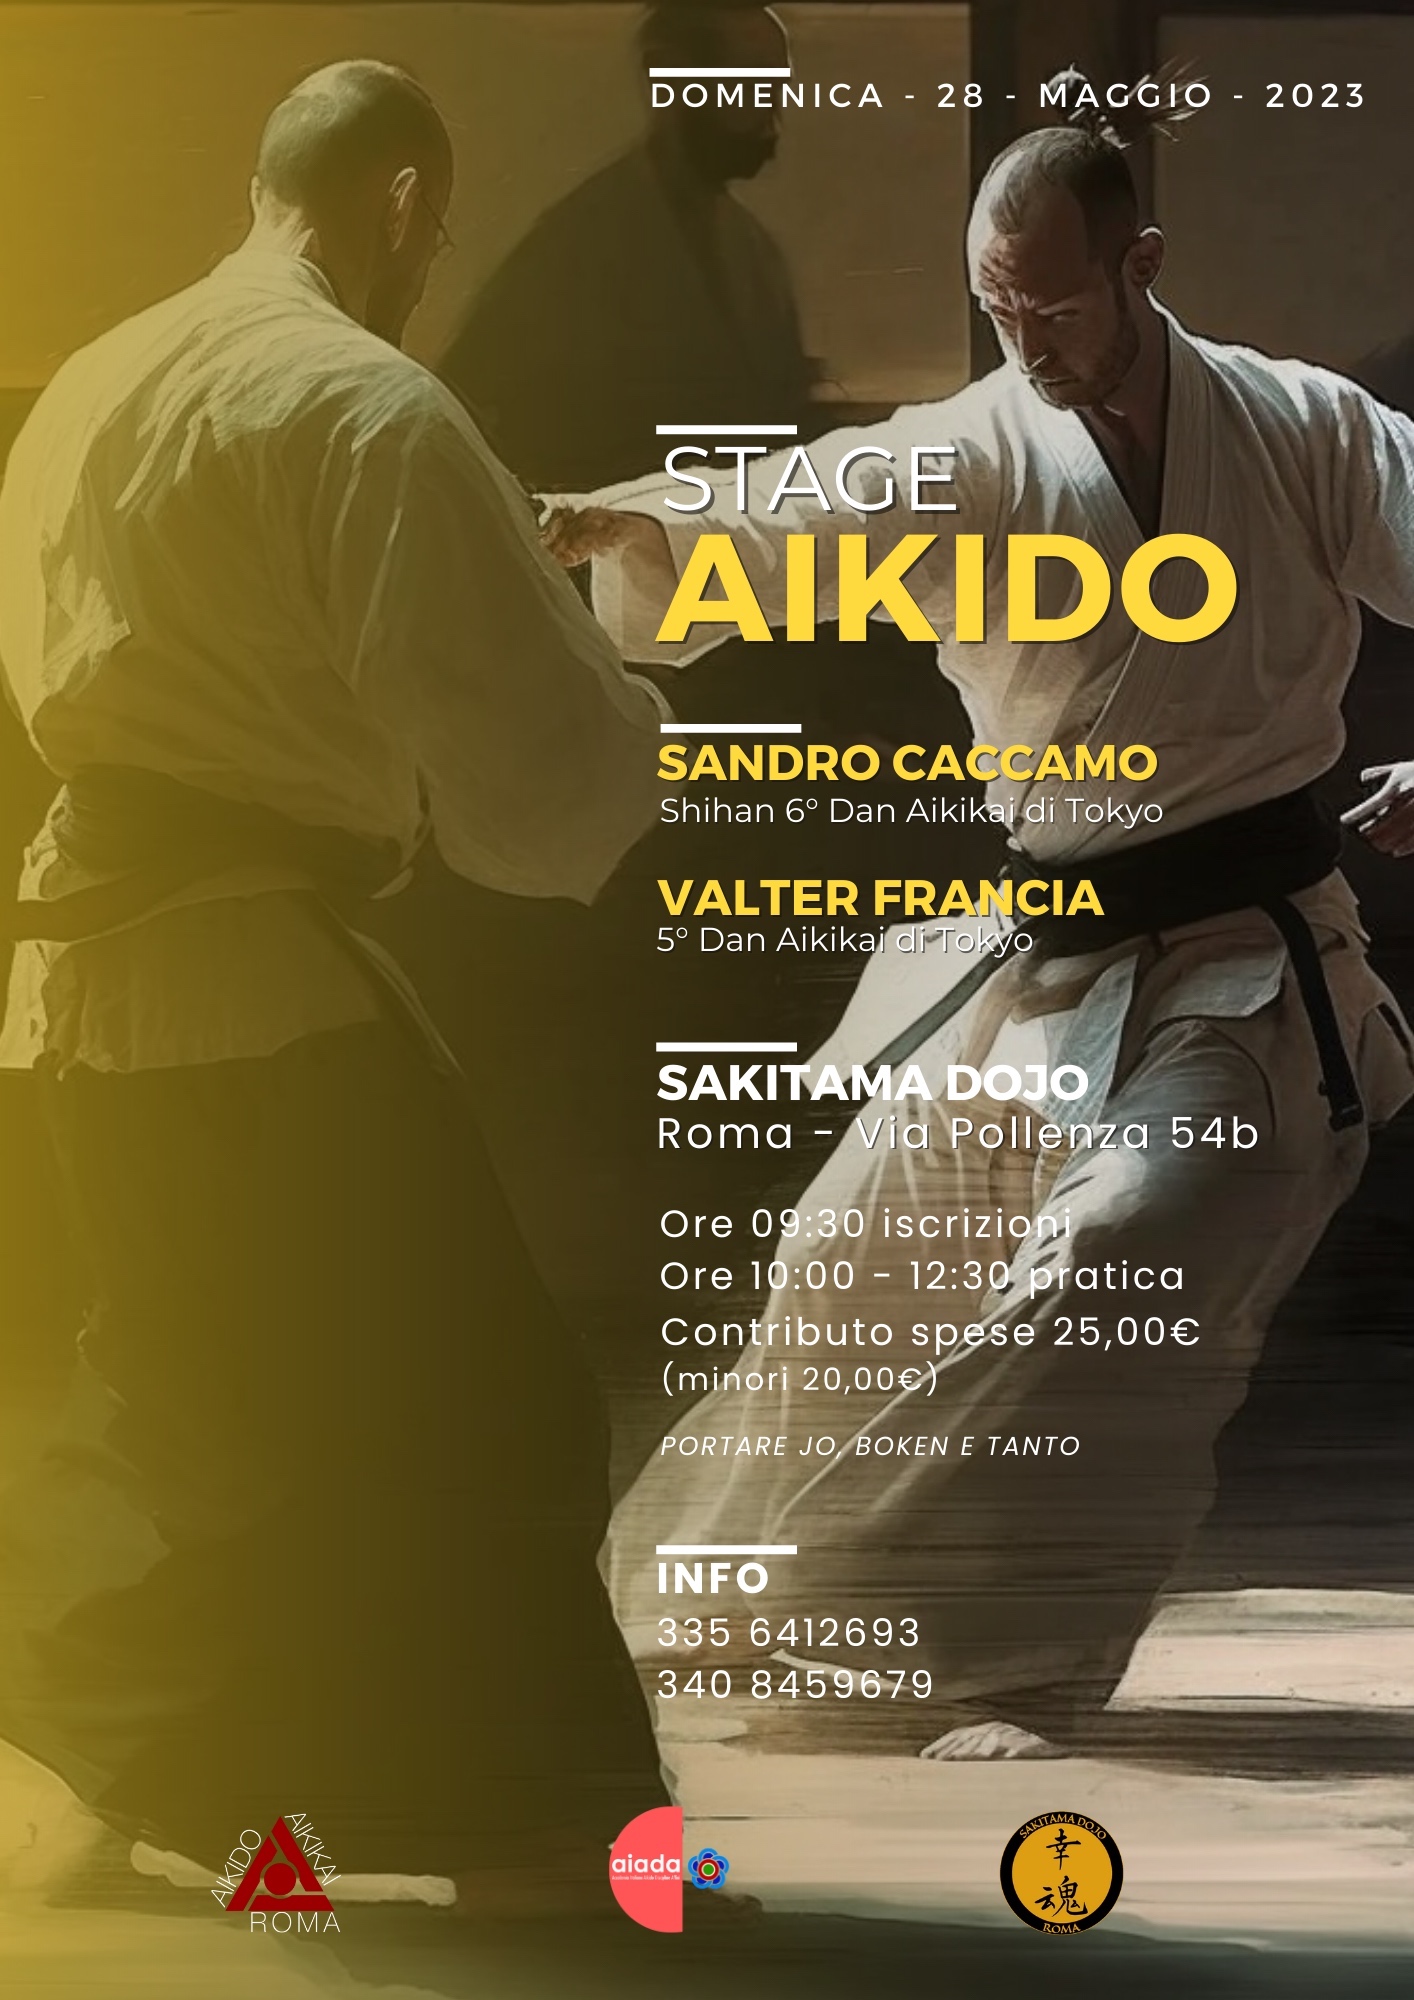 Stage aikido Sandro Caccamo Shian - Valter Francia - 28 Maggio 2023 - Roma